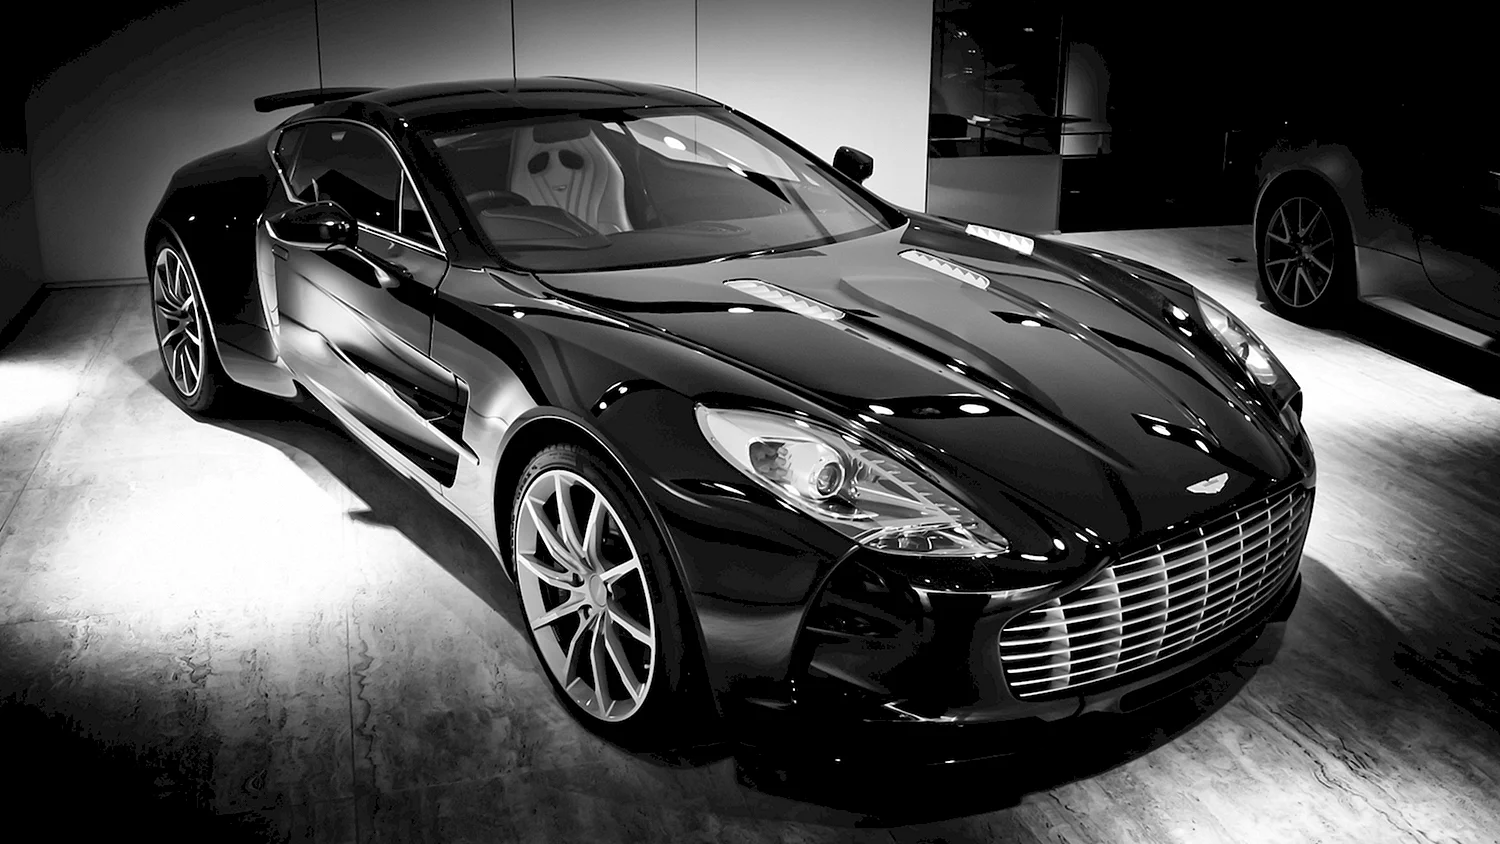 Aston Martin one-77